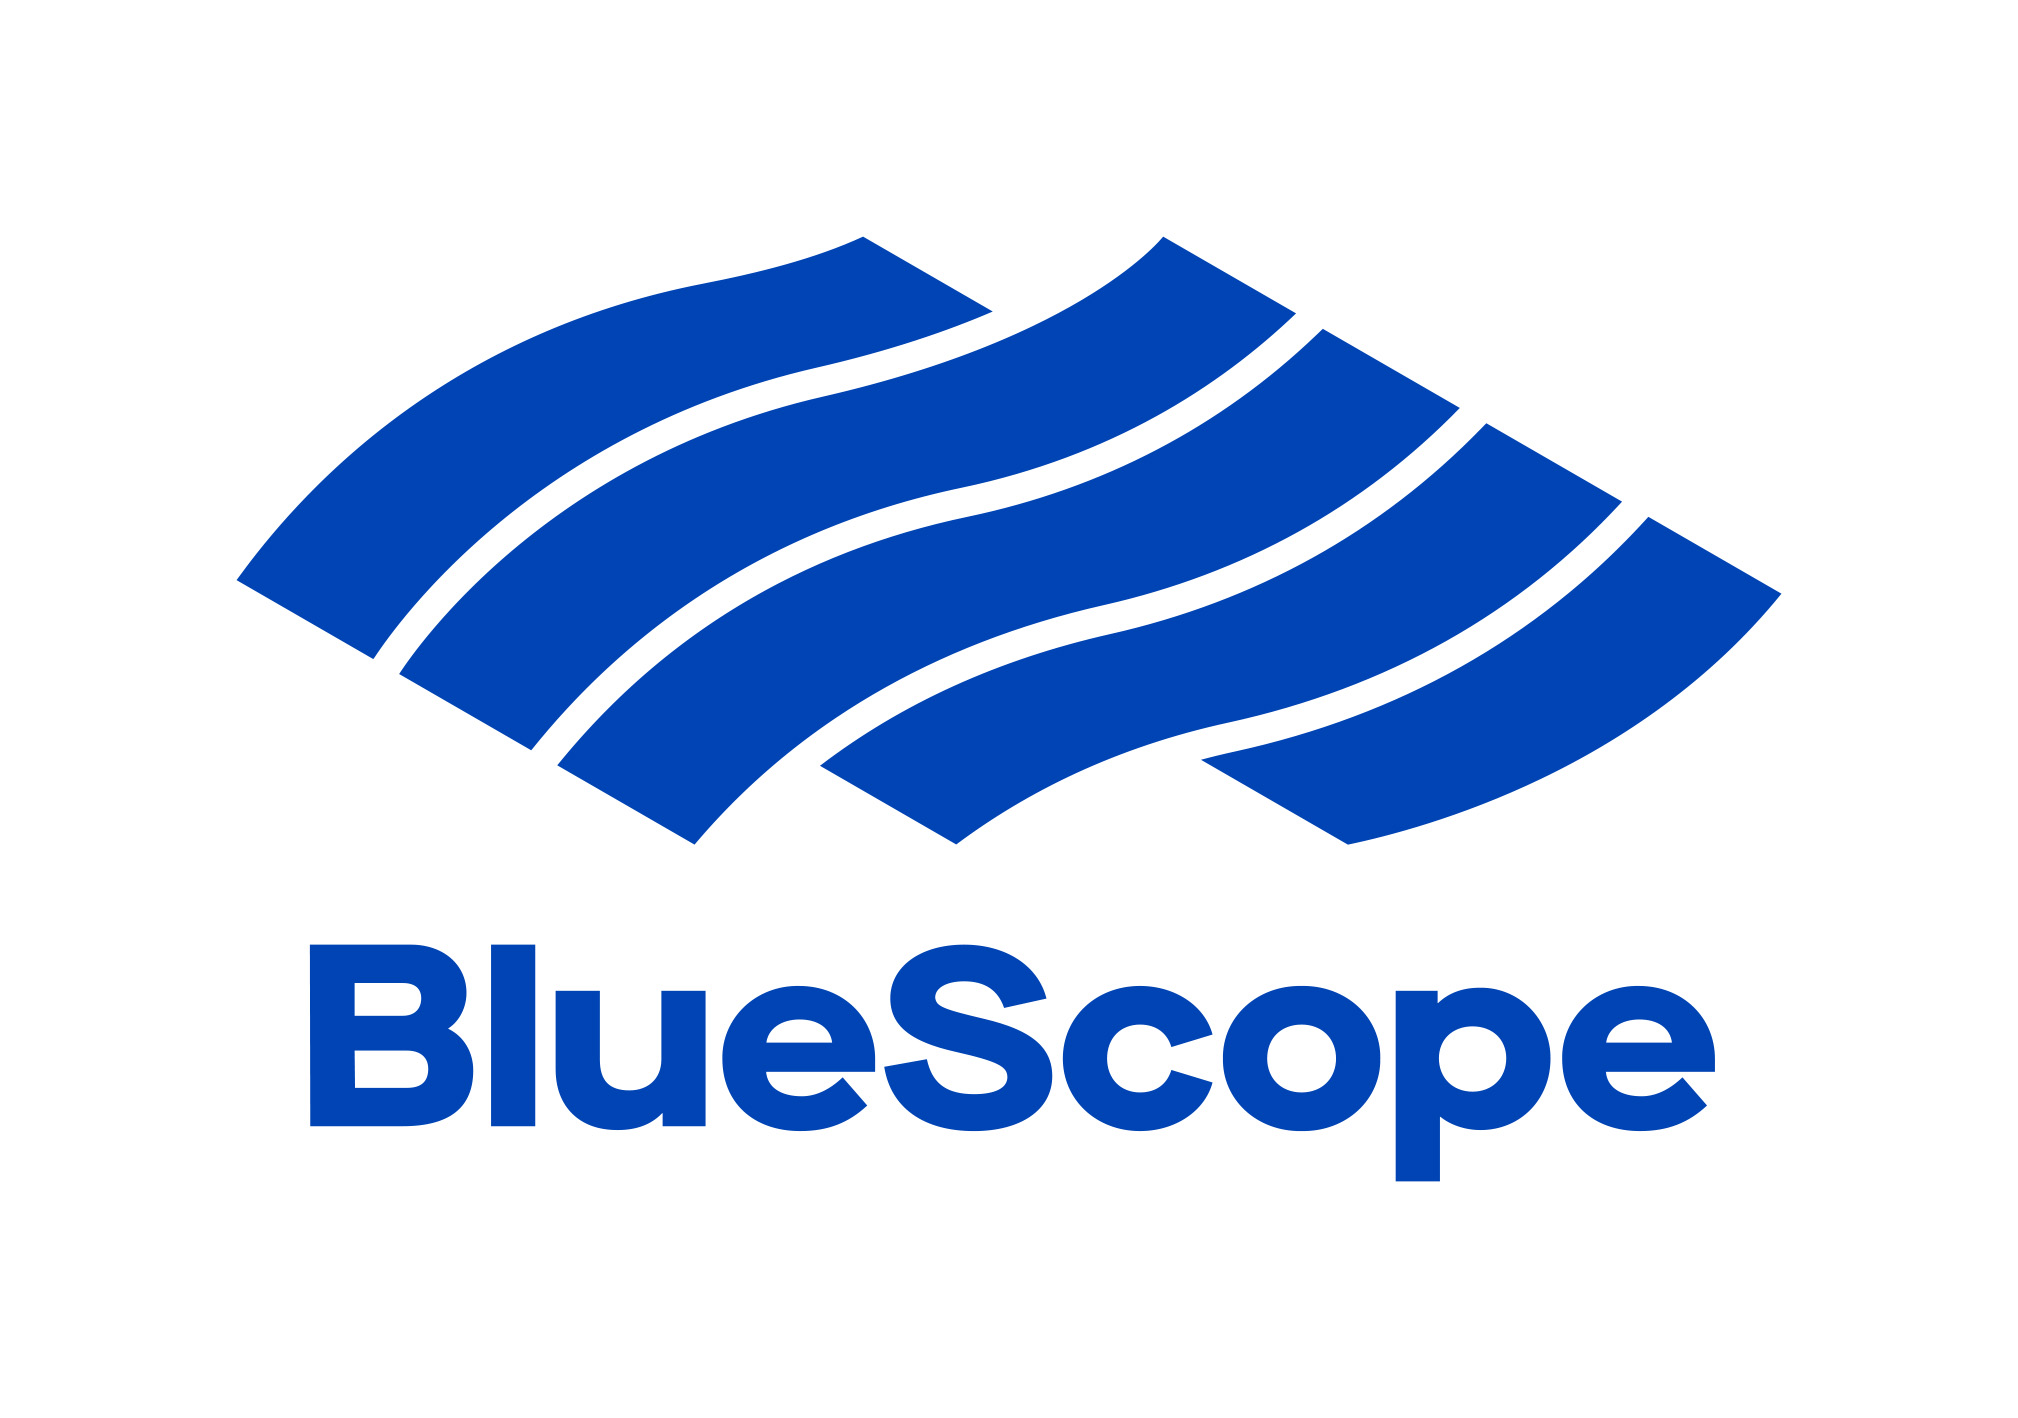 BlueScope Steel Limited